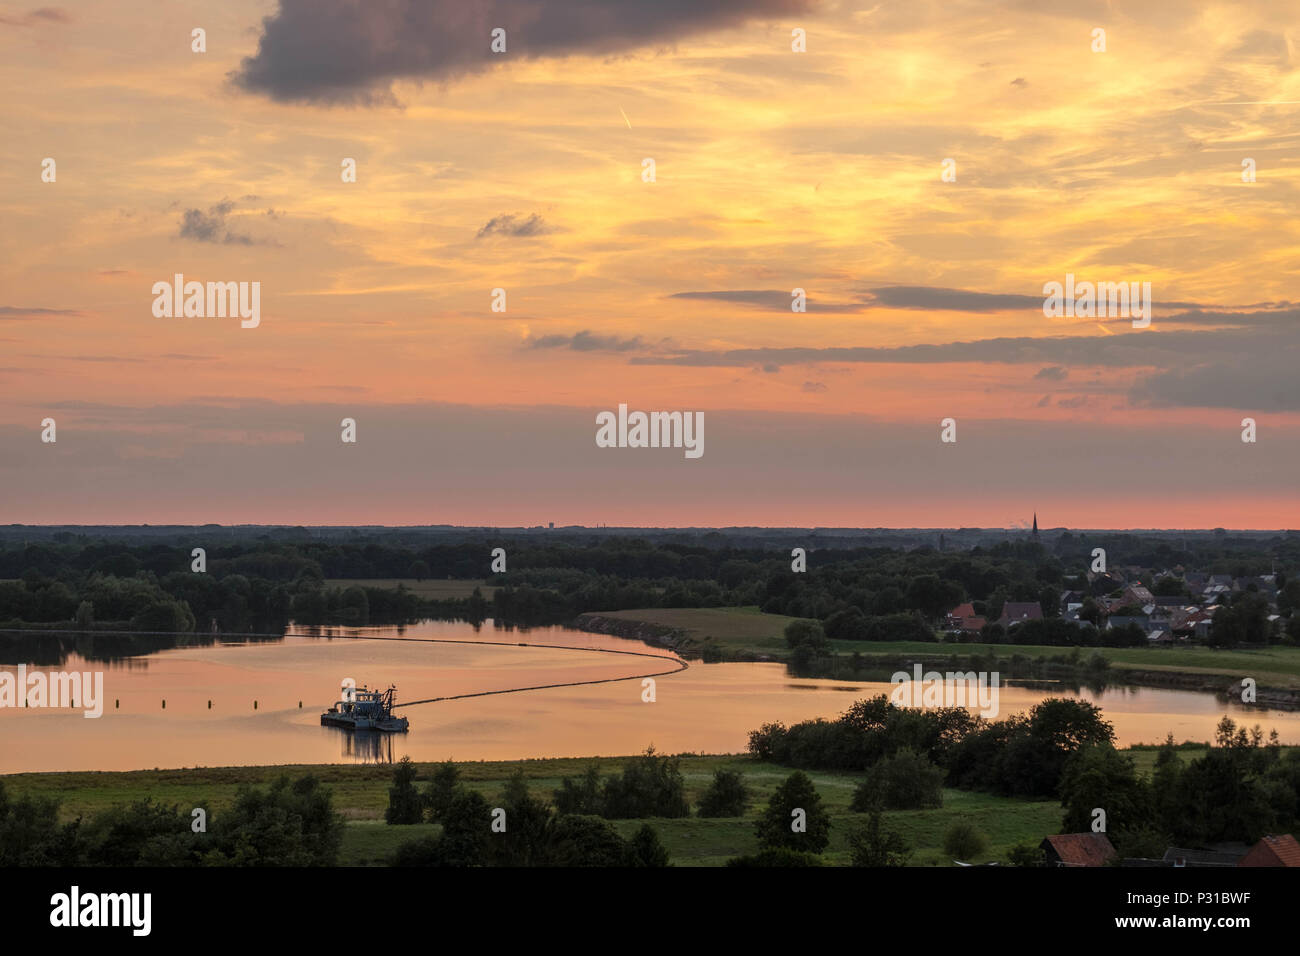 Un sablier se trouve sur un étang dans la campagne de la région 'Kempen' en Belgique. À droite, vous voyez les maisons de la ville 'Dessel'. Le soleil se couche. Banque D'Images